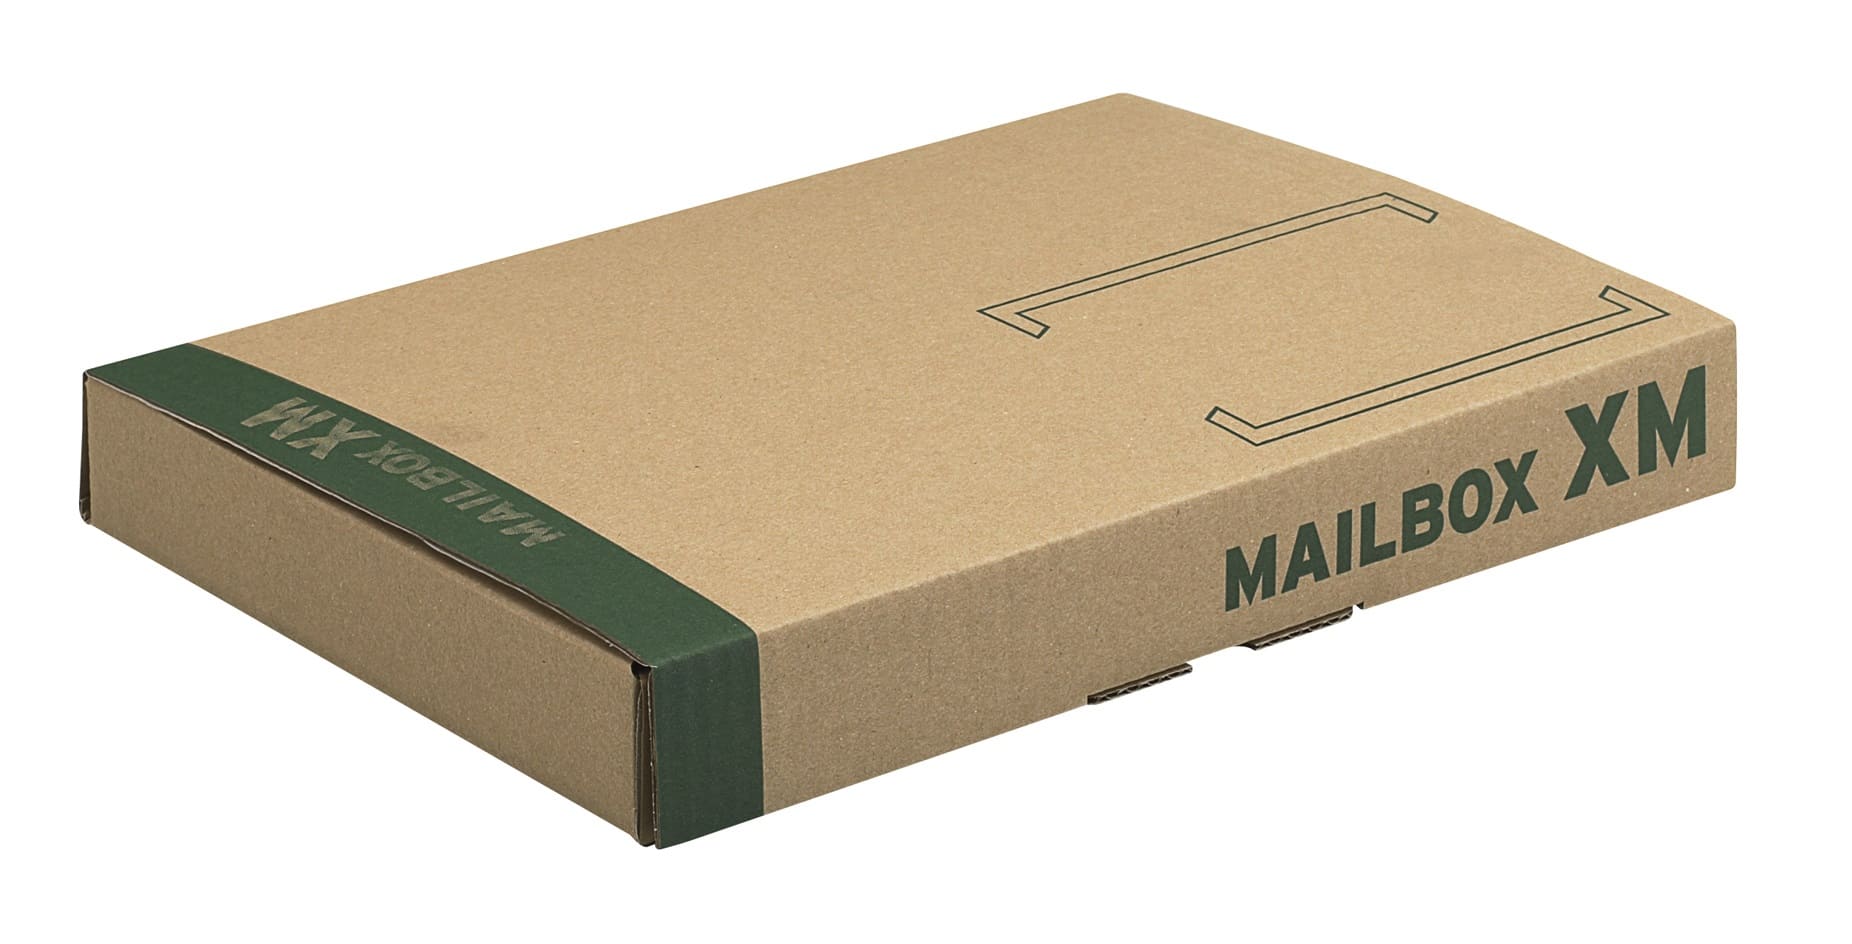 Postdoos Mailbox M - 331 x 241 x 104mm (20 st) L: 343mm x B: 233mm x H: 38mm